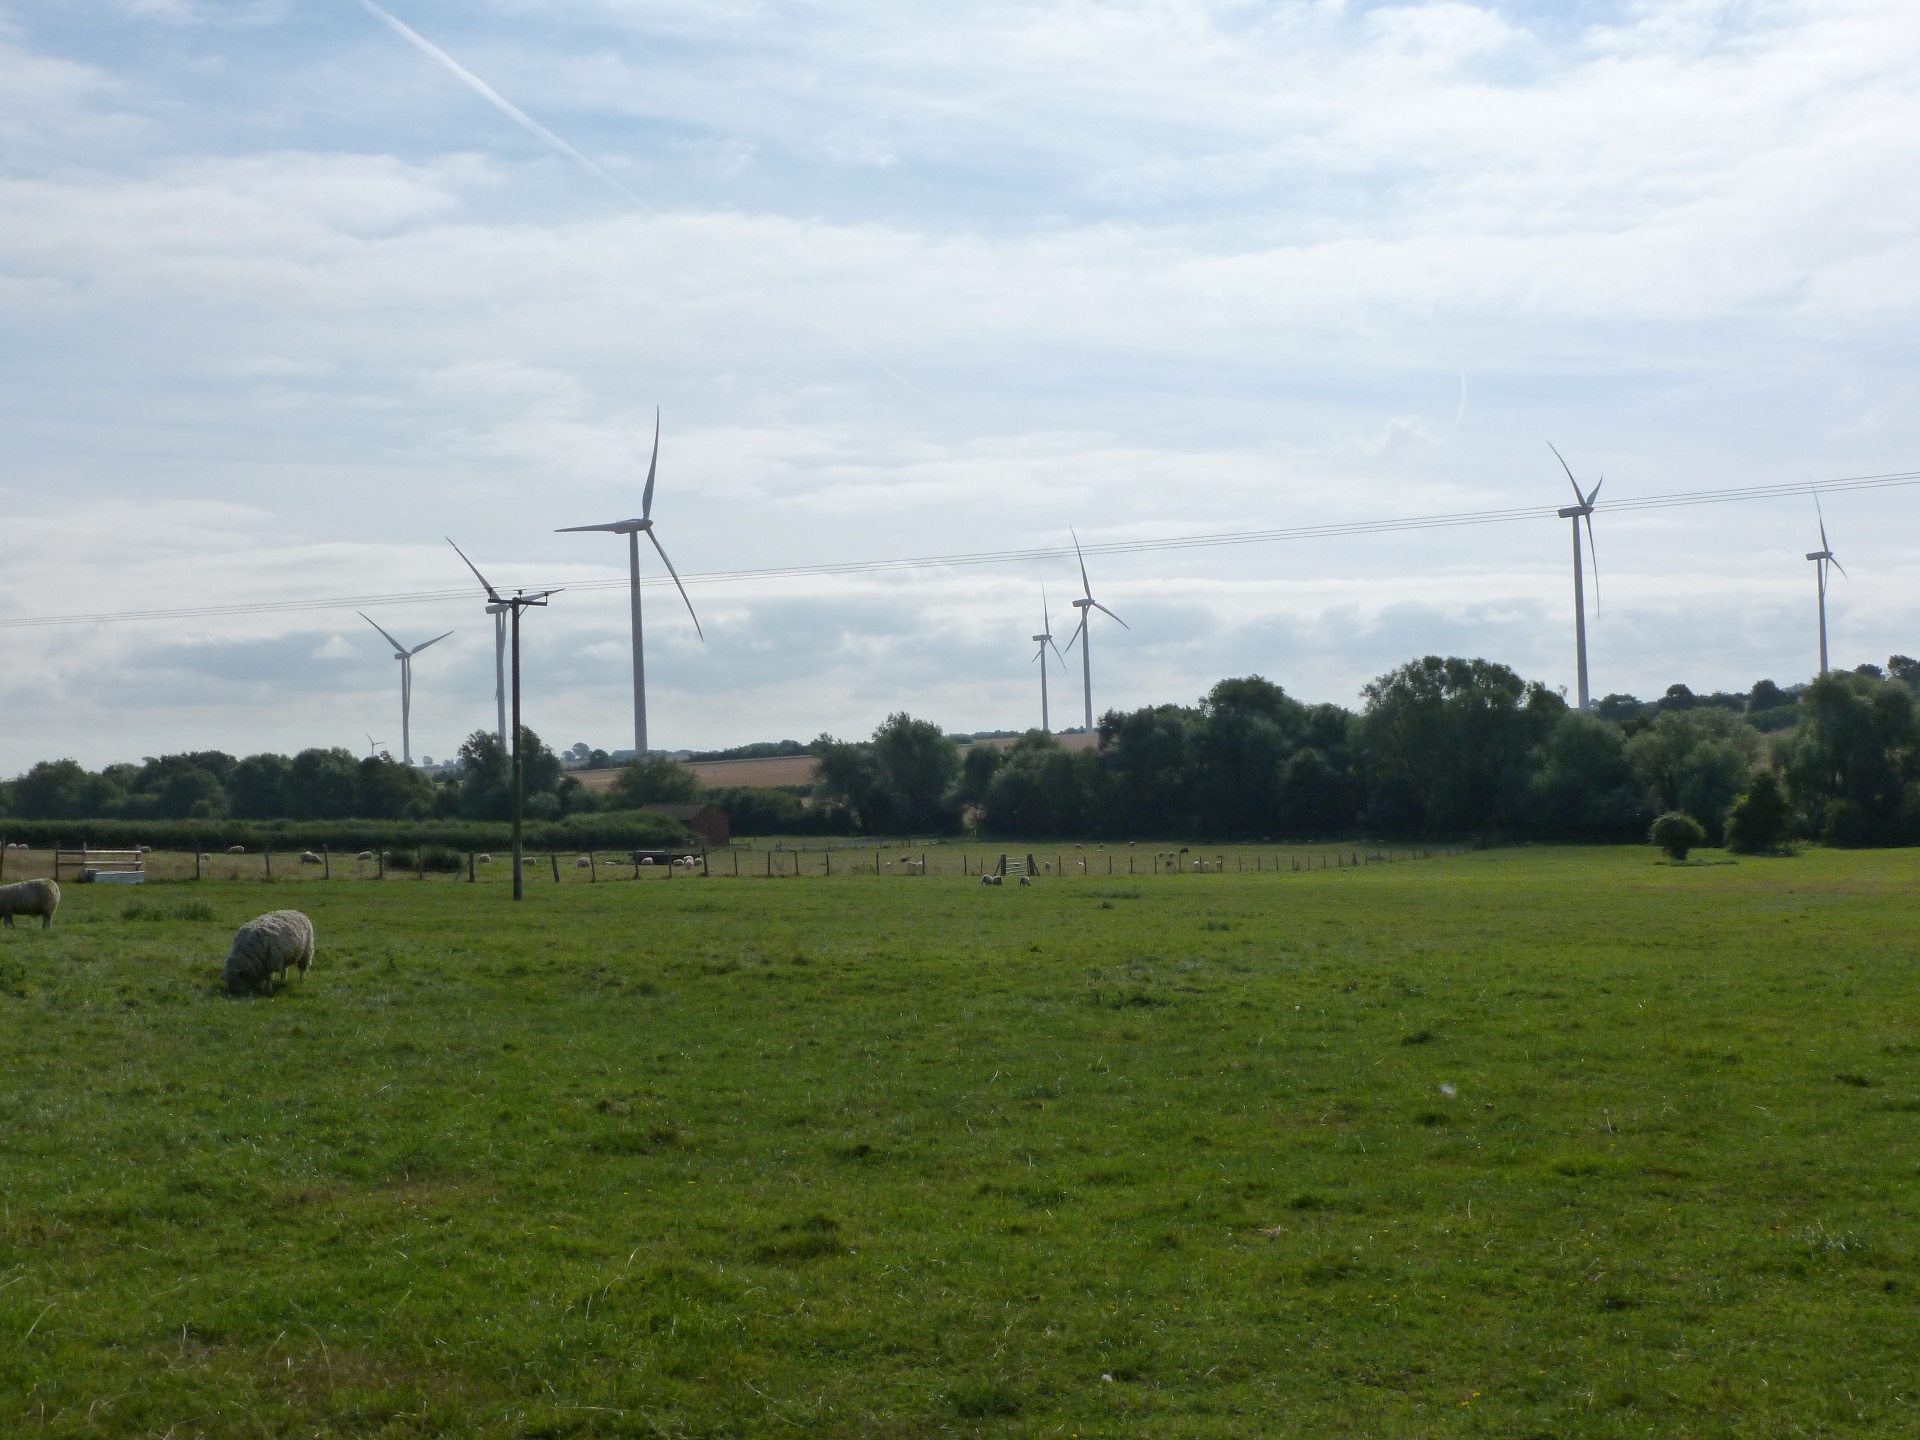 Petsoe Manor Wind Farm